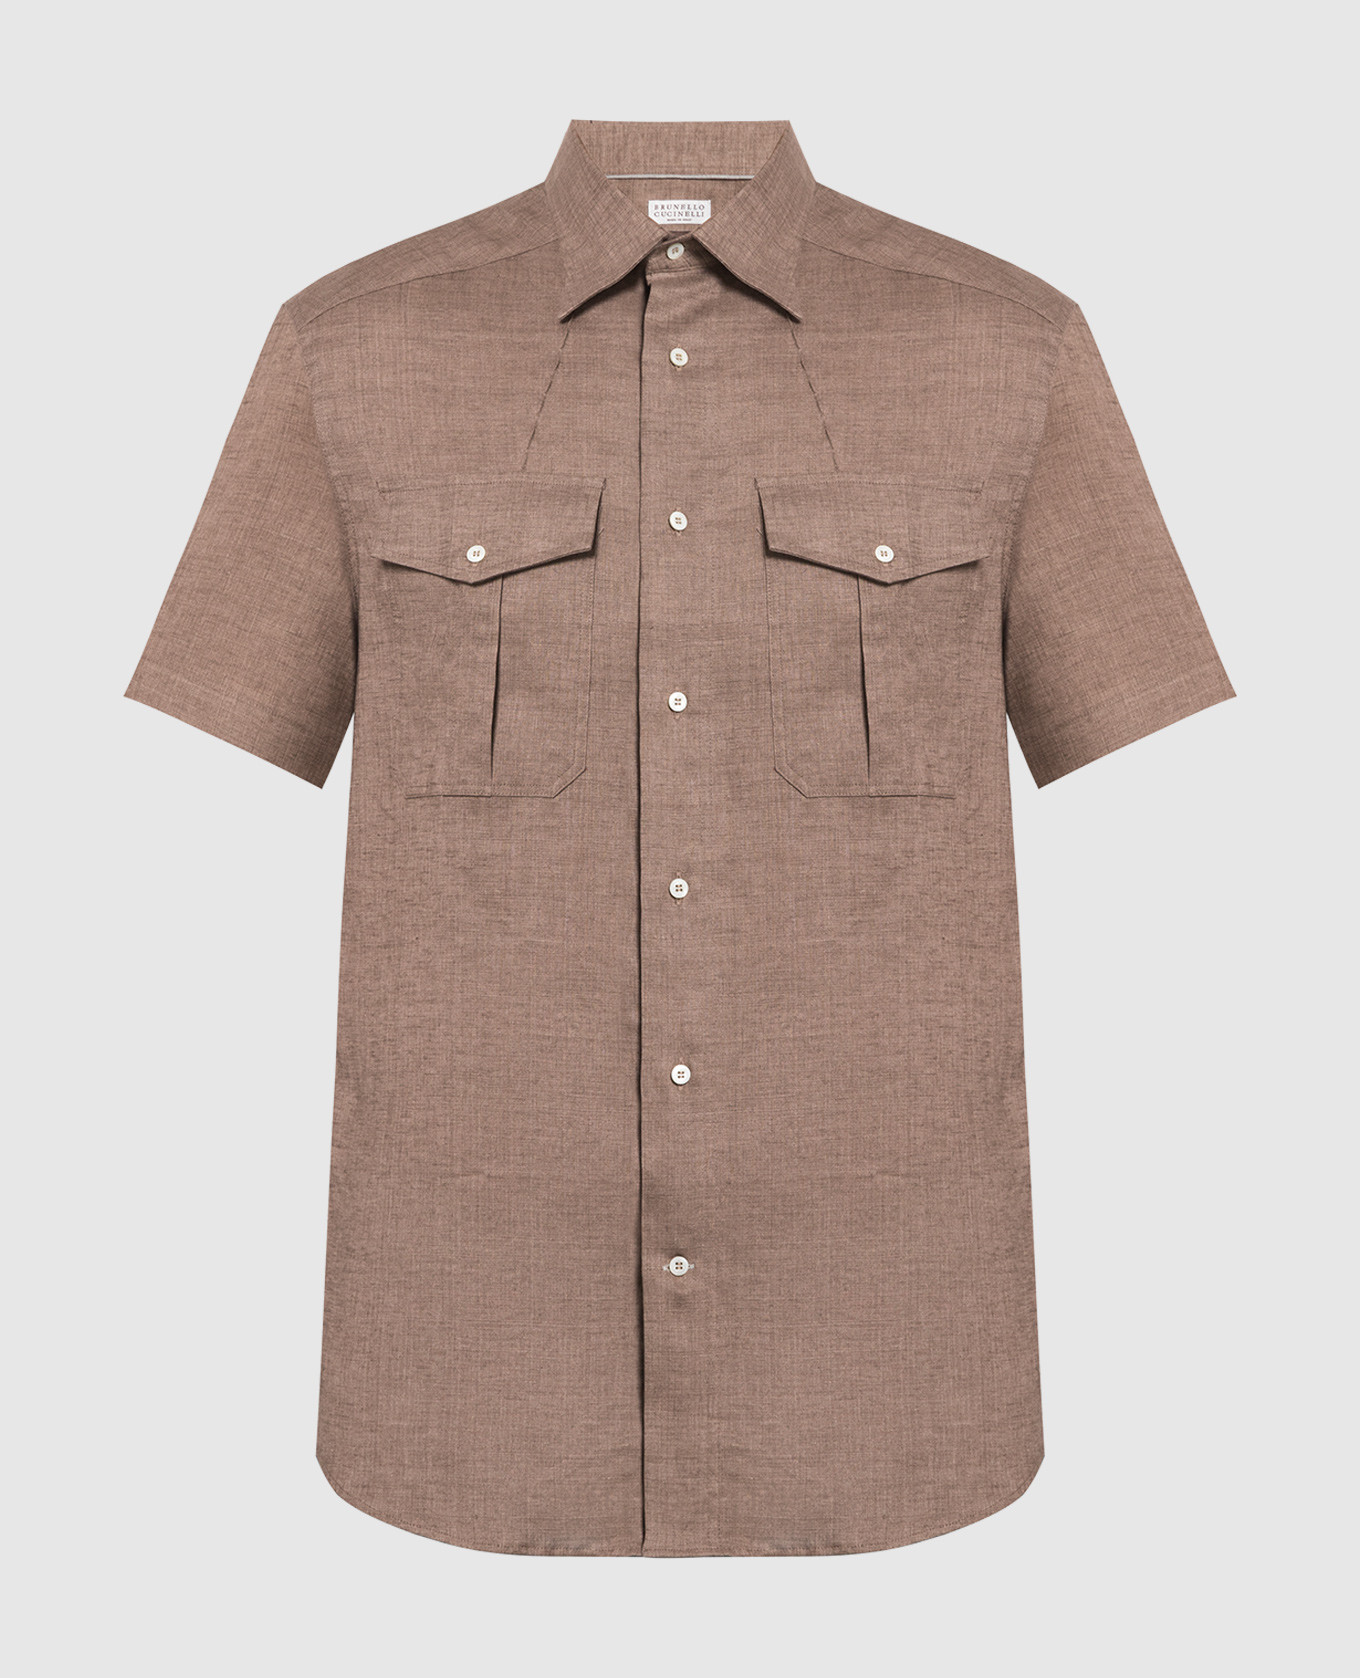 Brown linen shirt